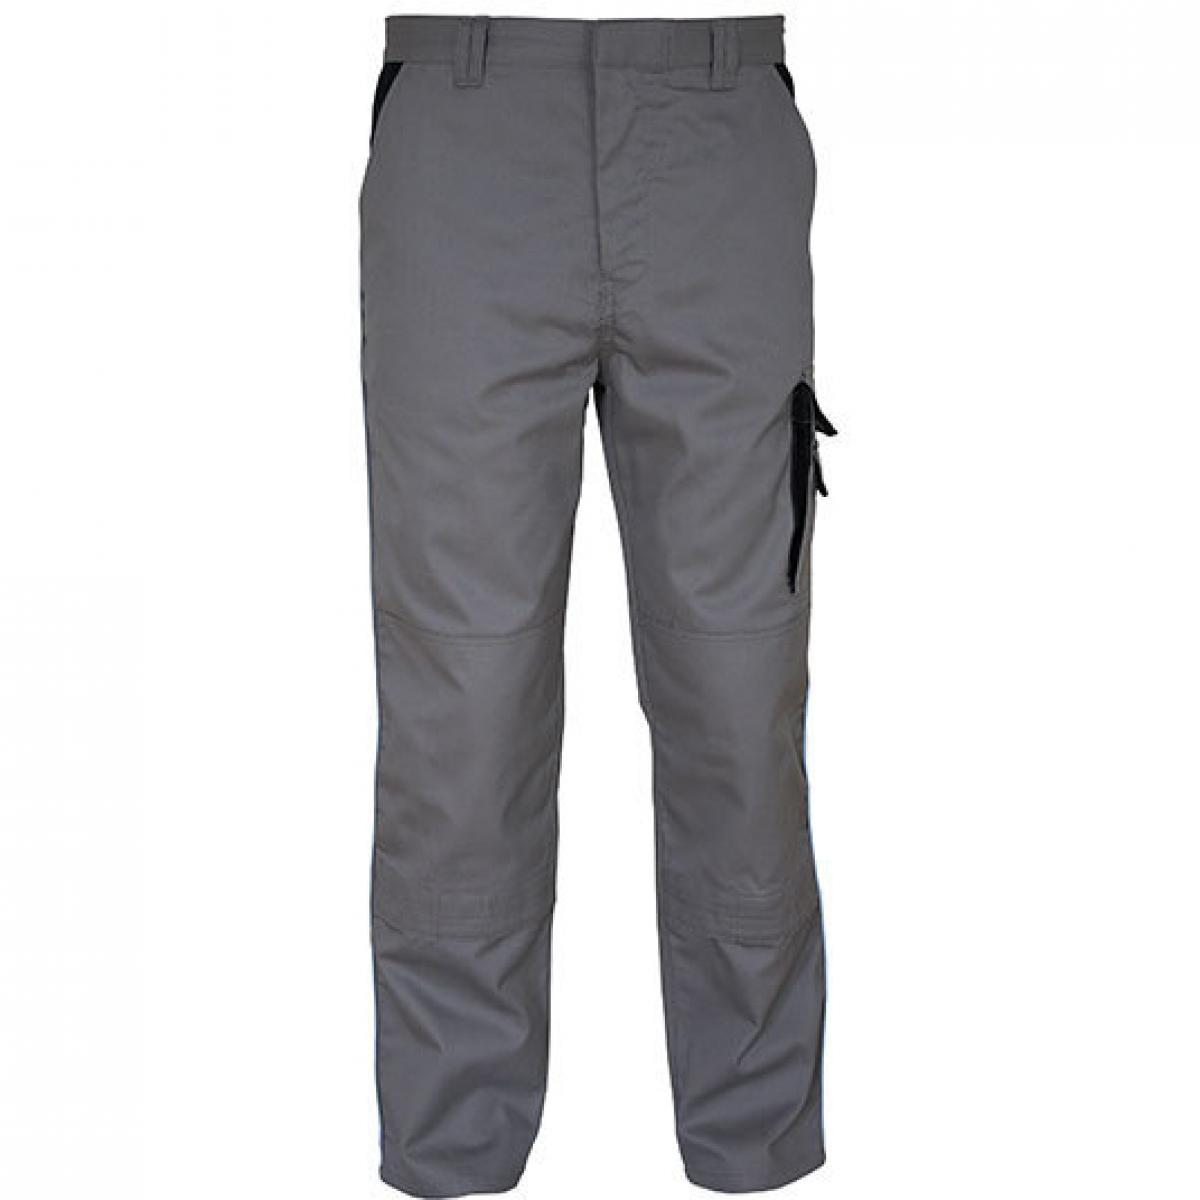 Hersteller: Carson Contrast Herstellernummer: CC709H Artikelbezeichnung: Herren Work Pants Arbeitshose / Bei 60 Grad waschbar Farbe: Grey/Black